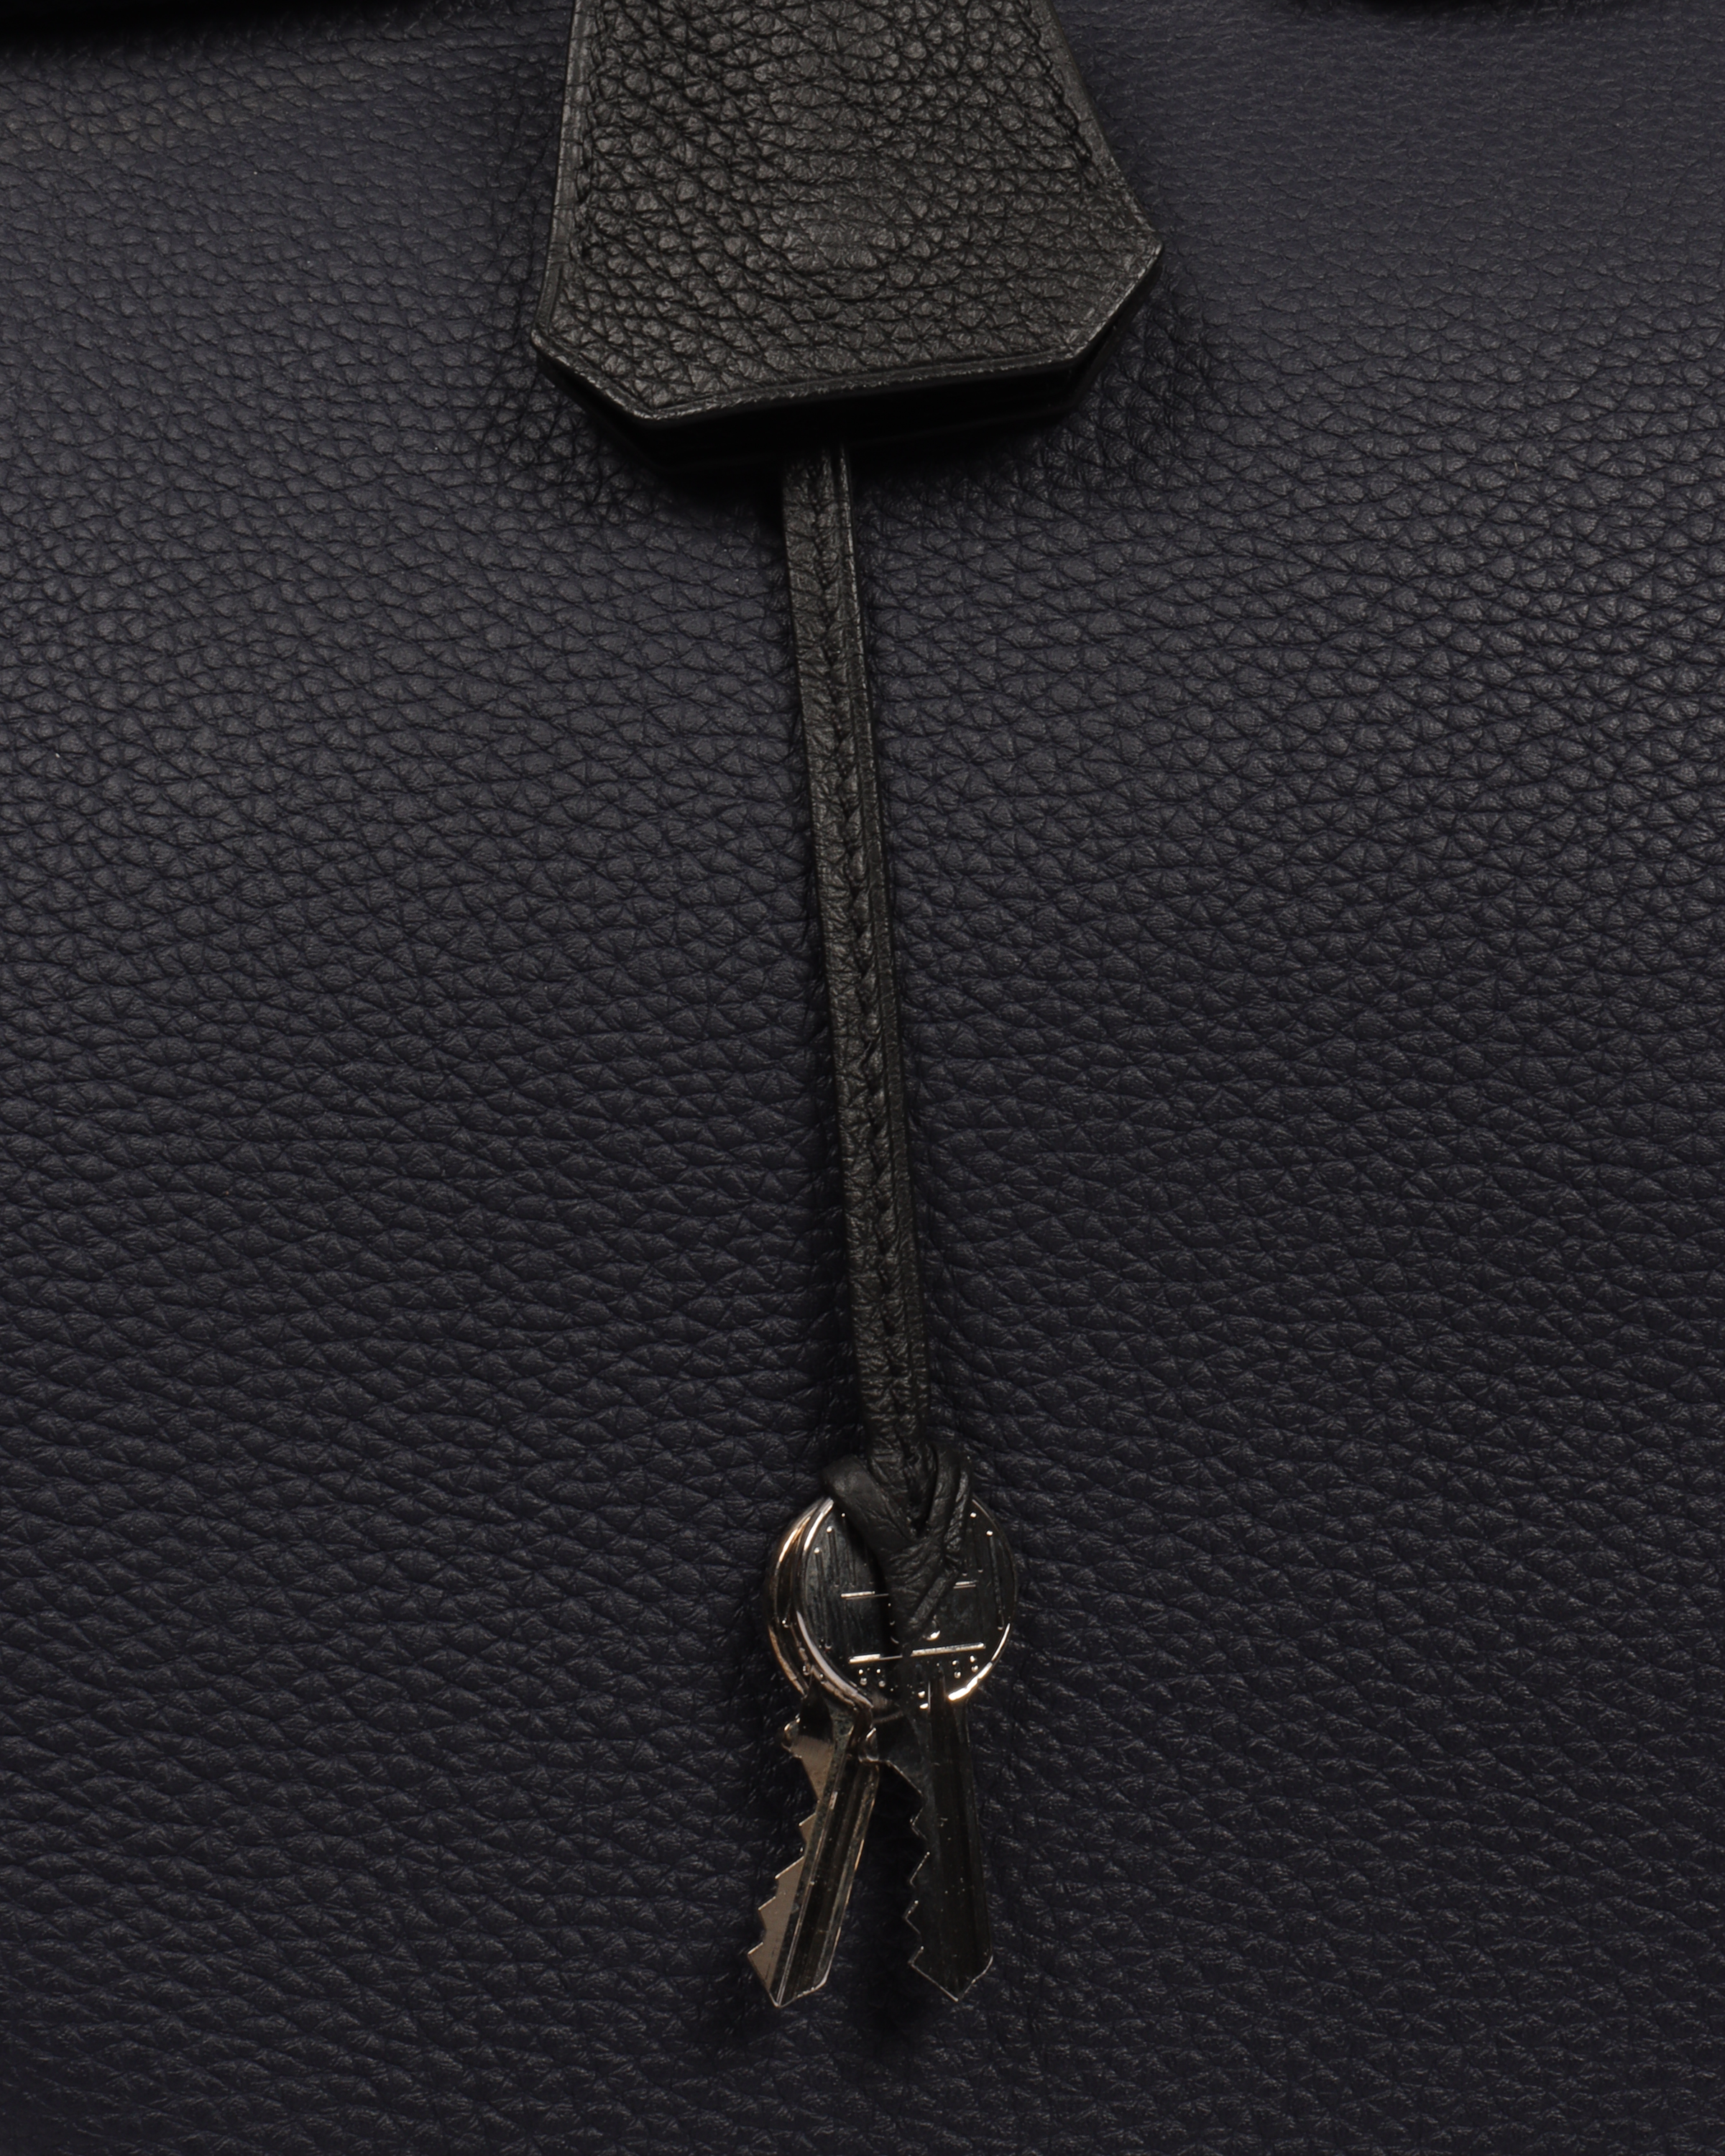 🔴SOLD🔴Bolsa #Hermès Birkin 40cm en piel Togo color Sanguine, con herrajes  en plateado. Con llaves y candado. En buen estado, con ligera…